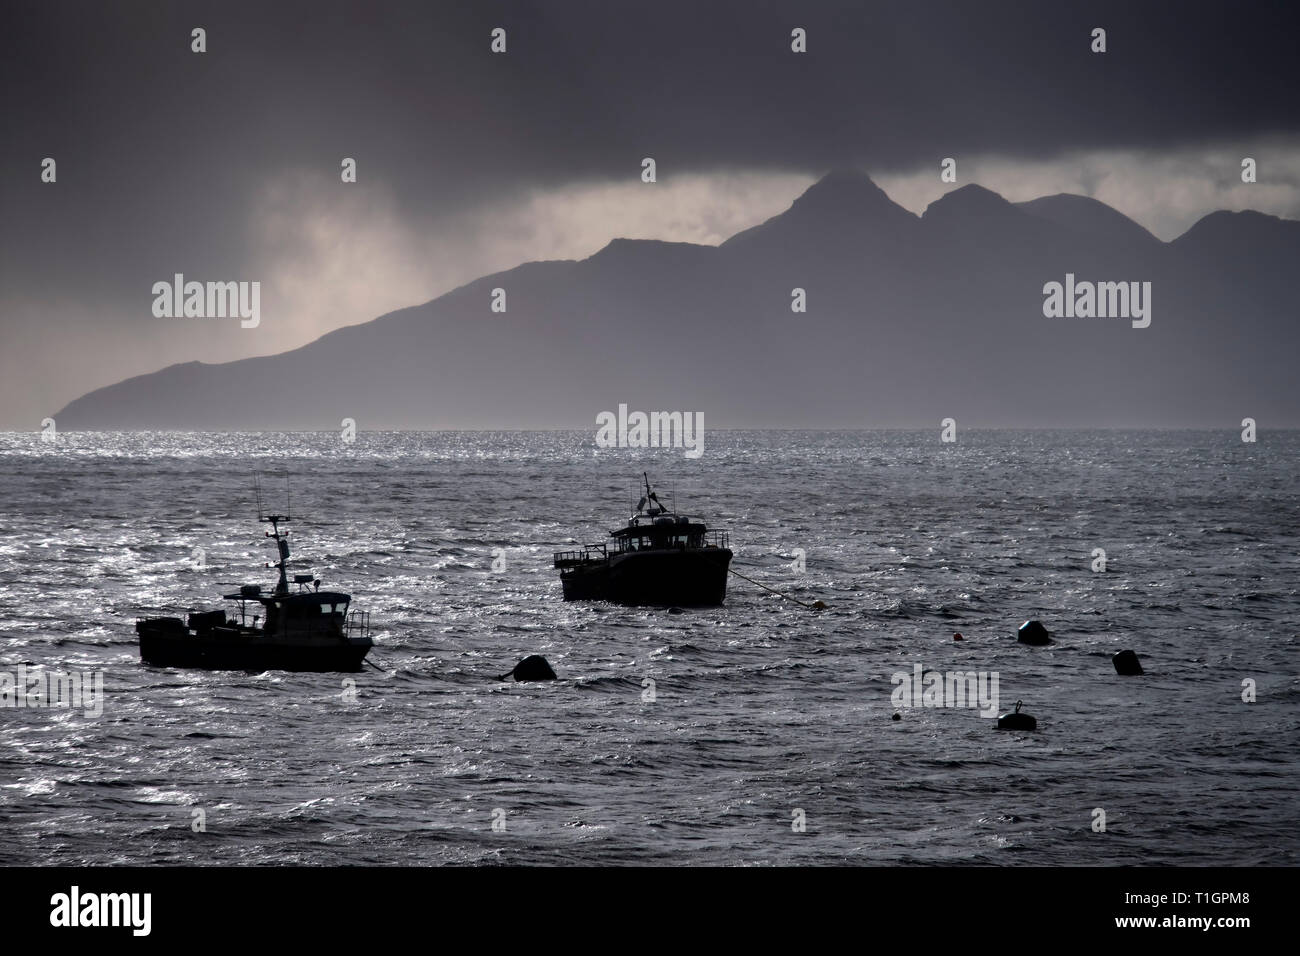 Les bateaux de pêche amarrés à Elgol soutenu par l'île de Rum, Skye, Hébrides intérieures, Ecosse, Royaume-Uni Banque D'Images